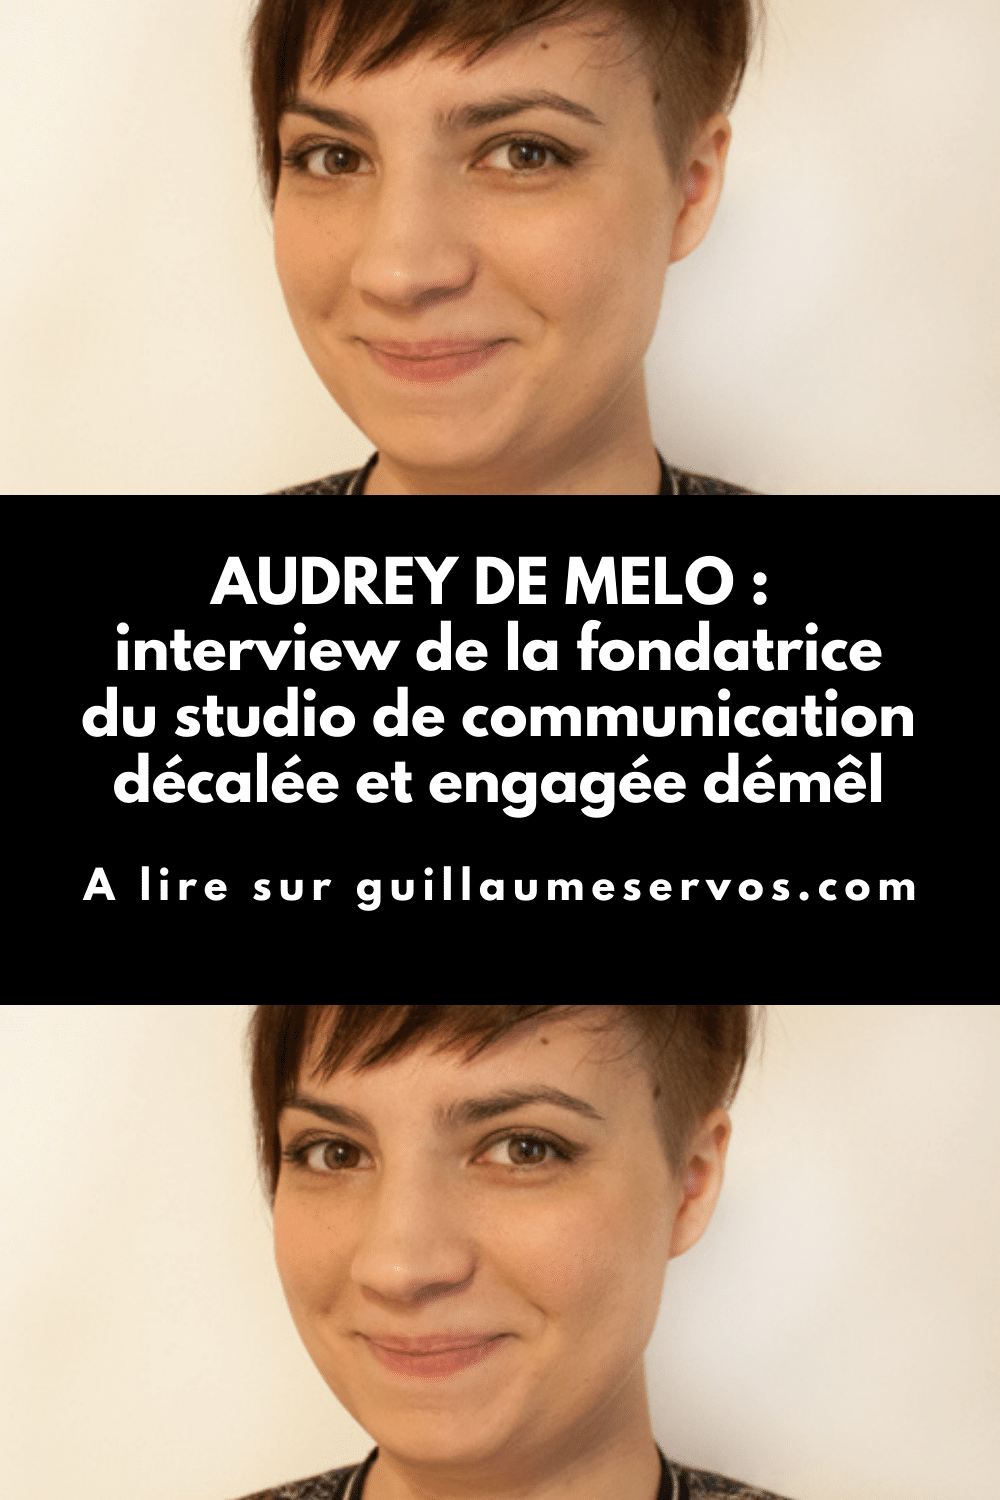 Découvre mon interview avec Audrey de Melo, fondatrice de démêl, un studio de communication décalée et engagée. Freelancing, réseaux sociaux, voyage...